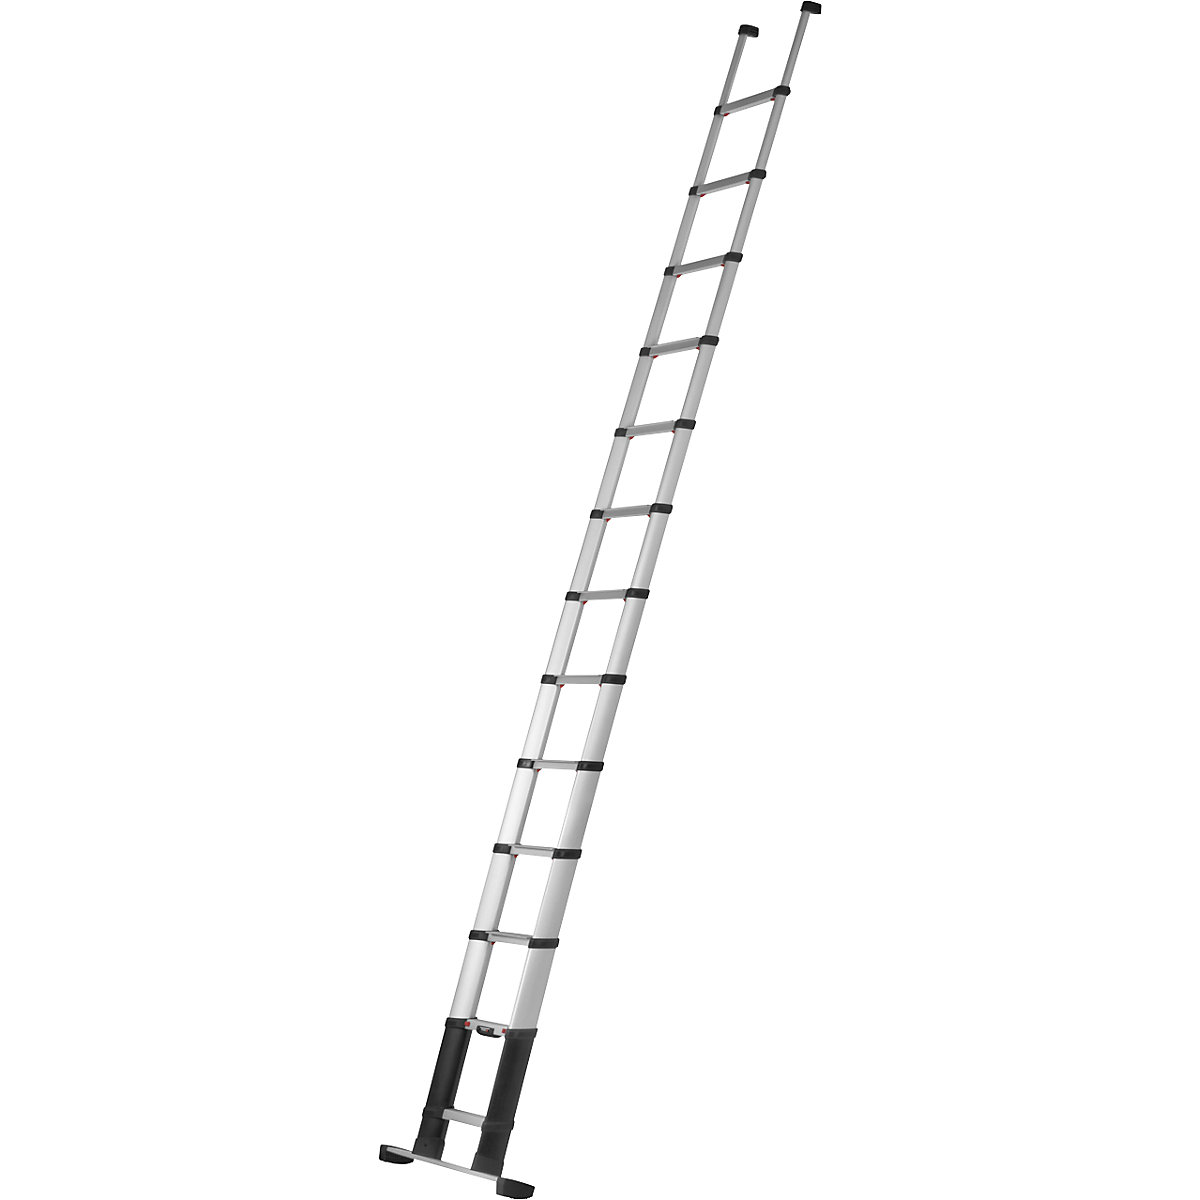 Teleskopska prislonska lestev PRIME LINE – Telesteps, standardna različica, globina stopnic 80 mm, 13 stopnic, prečka-8